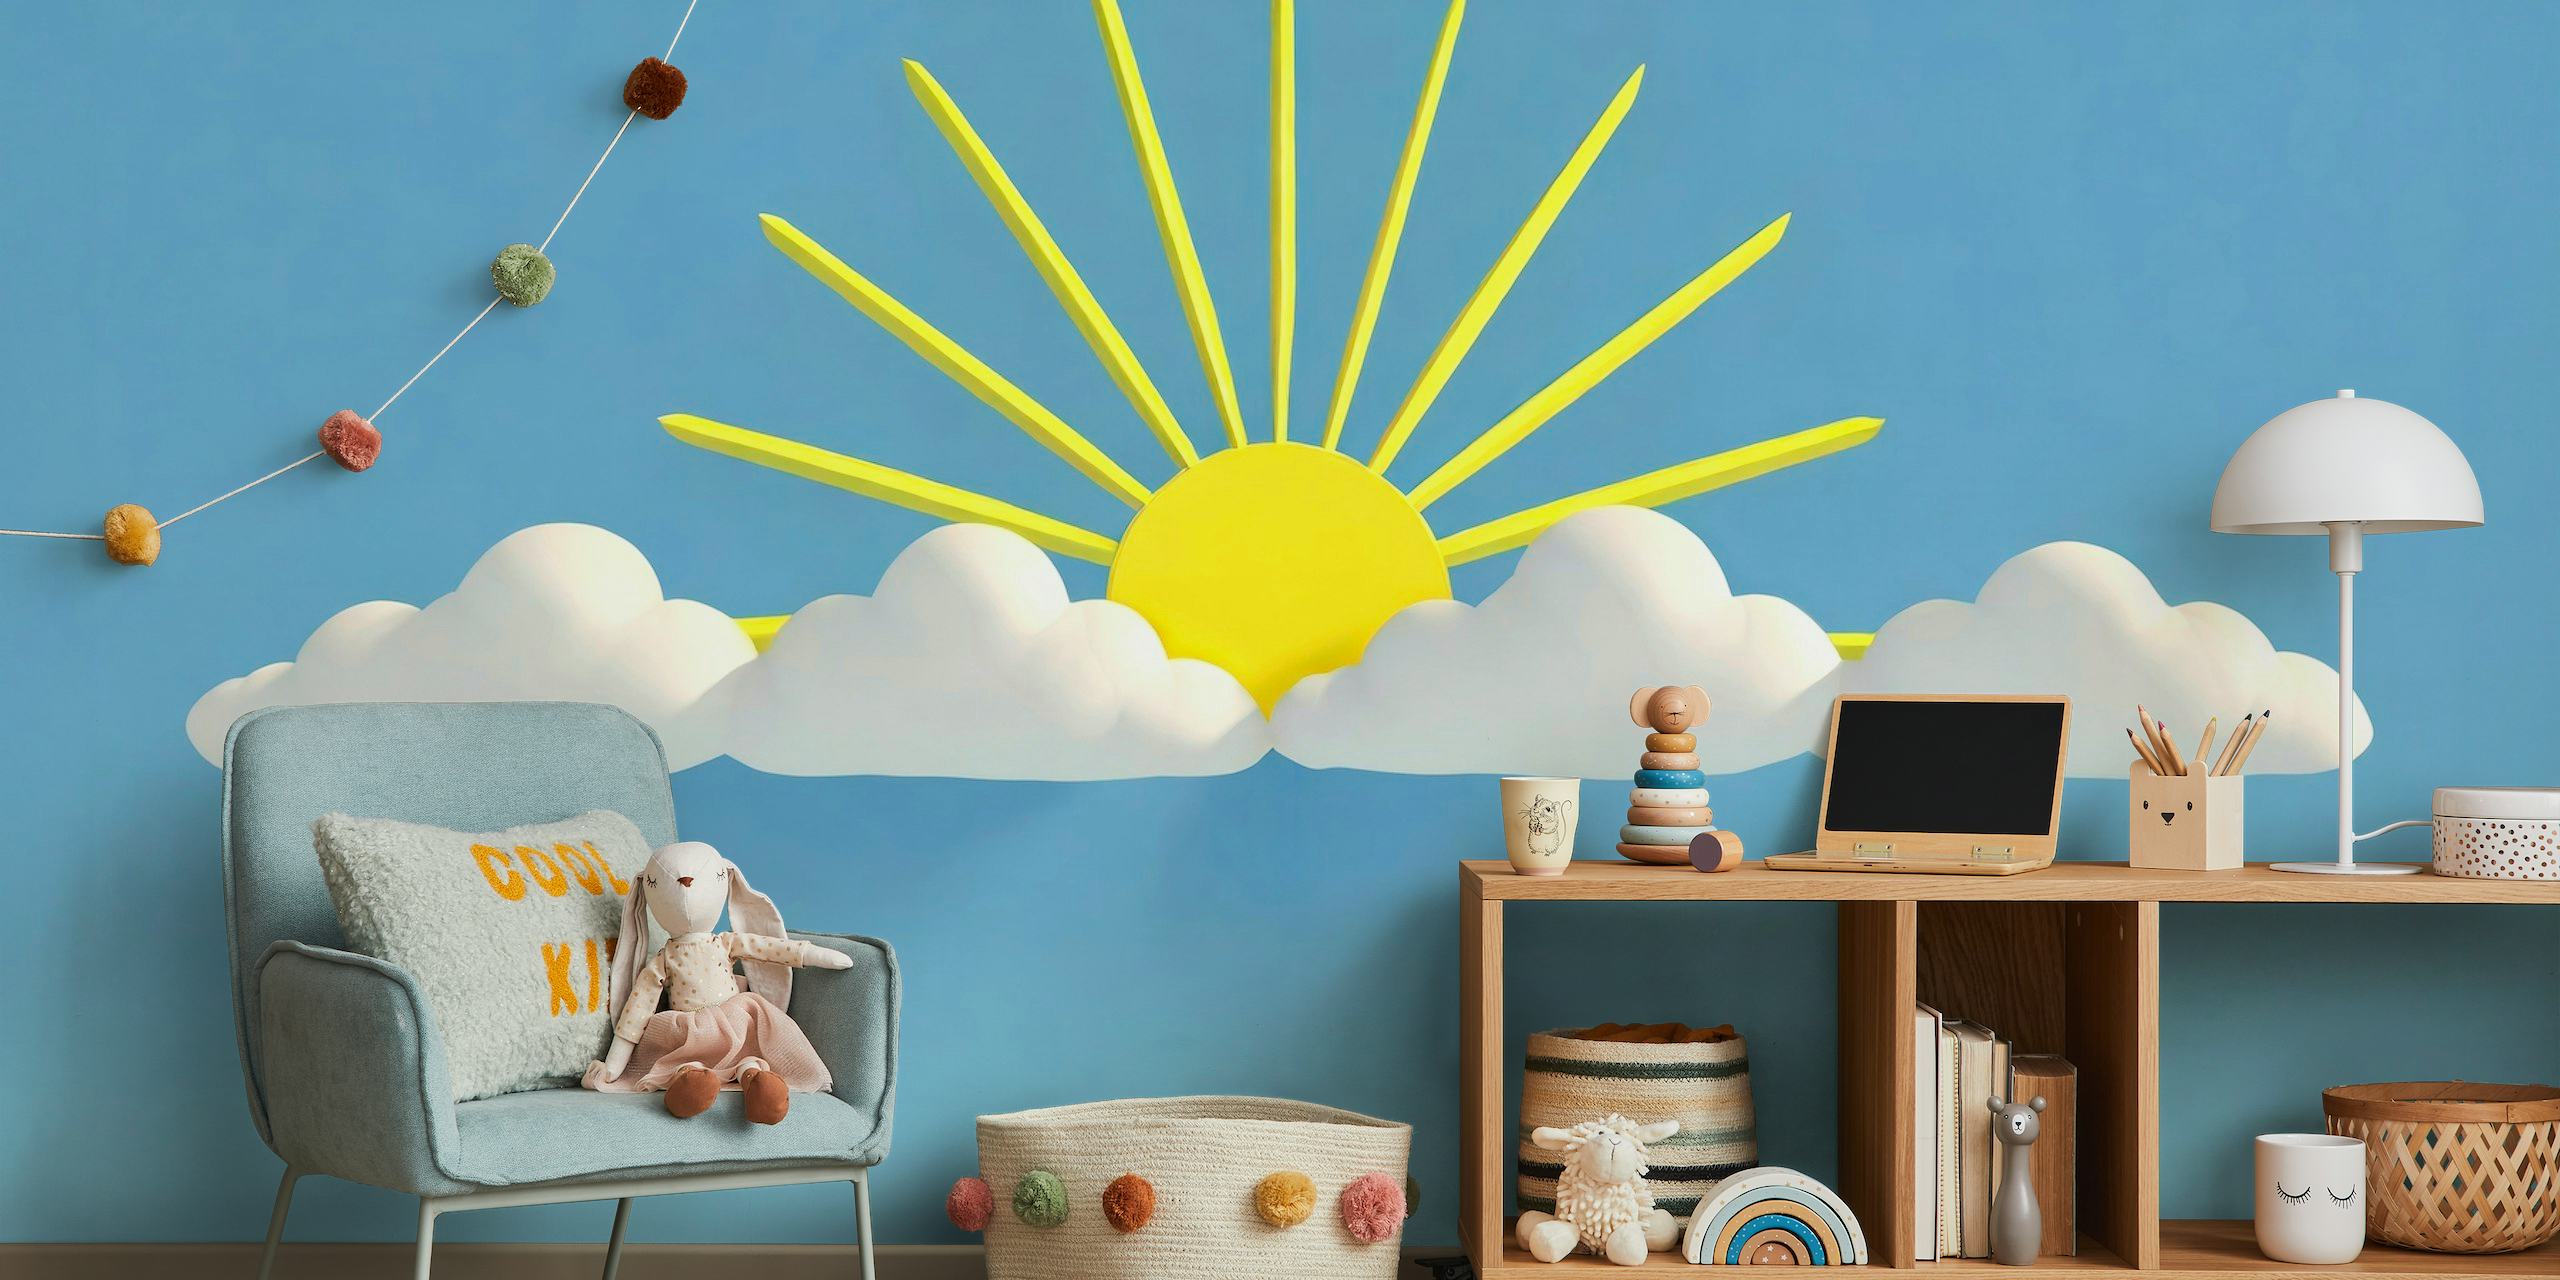 Ilustracja przedstawiająca uśmiechnięte słońce z promieniami i białymi chmurami na fototapecie z niebieskim tłem.